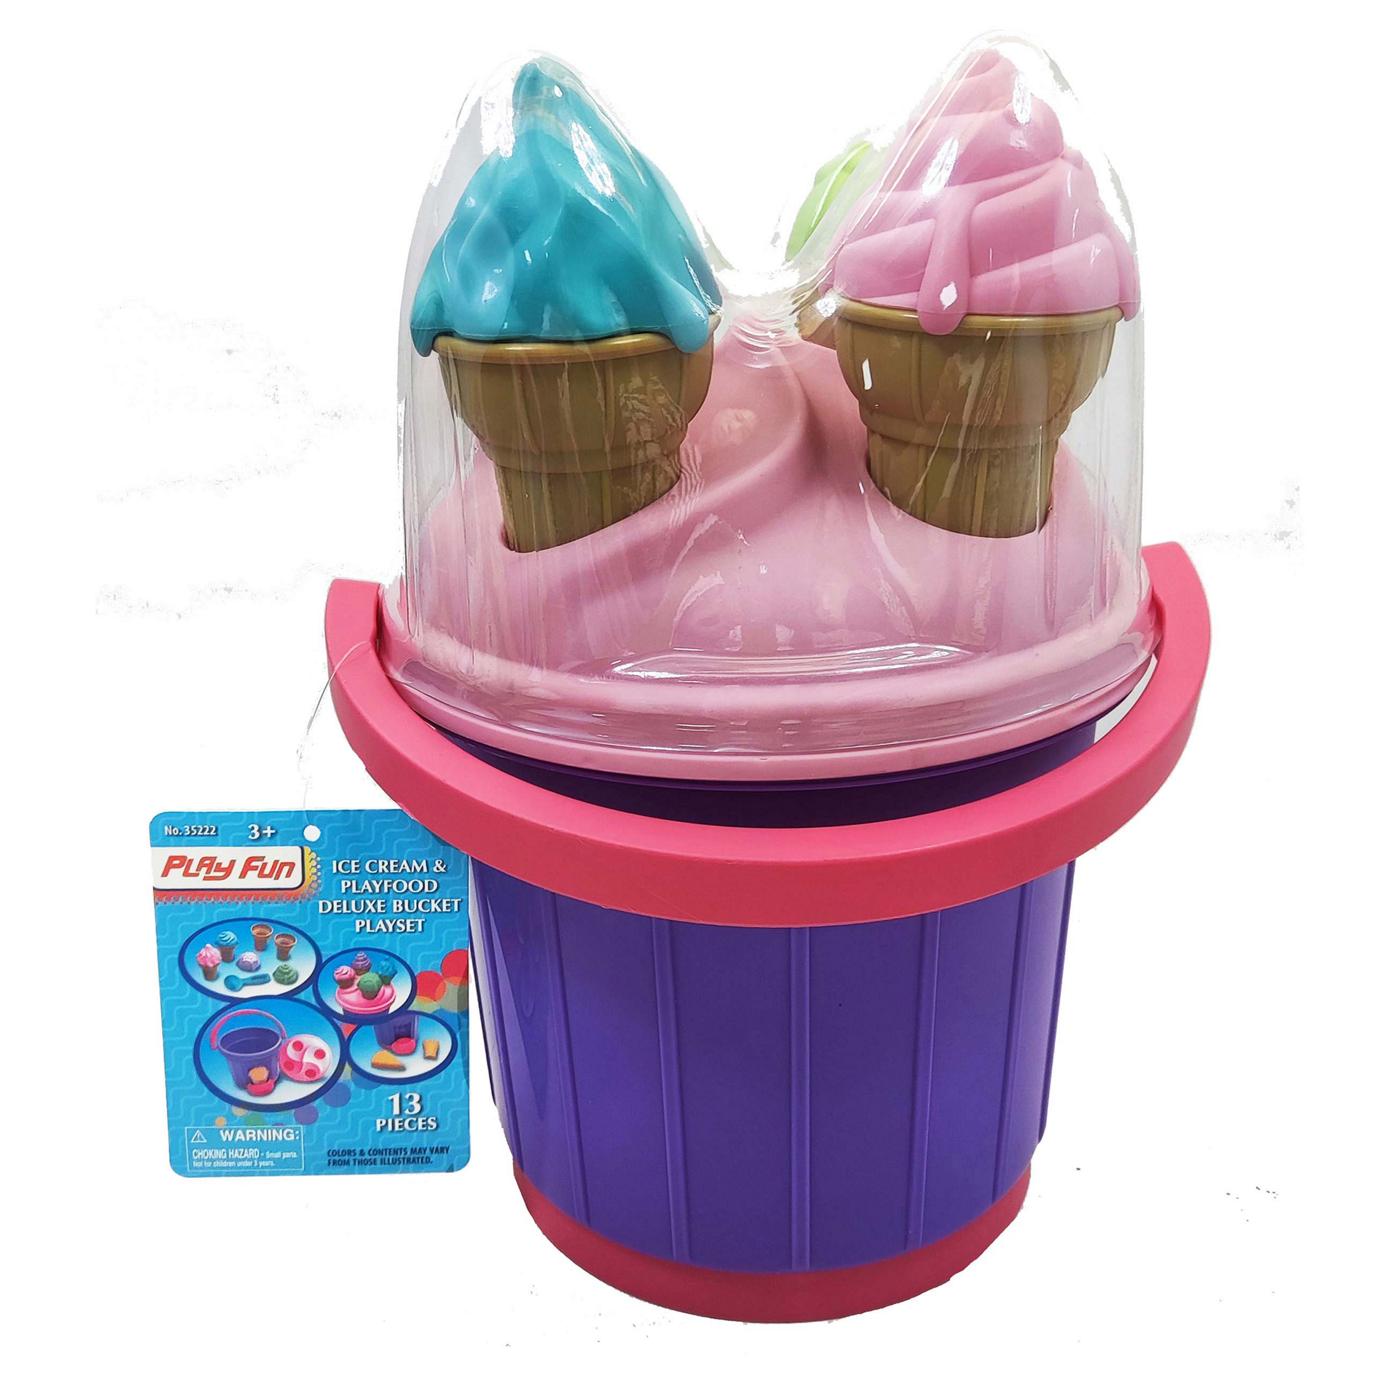 Play Fun Ice Cream & Playfood Deluxe Bucket Playset; image 5 of 6